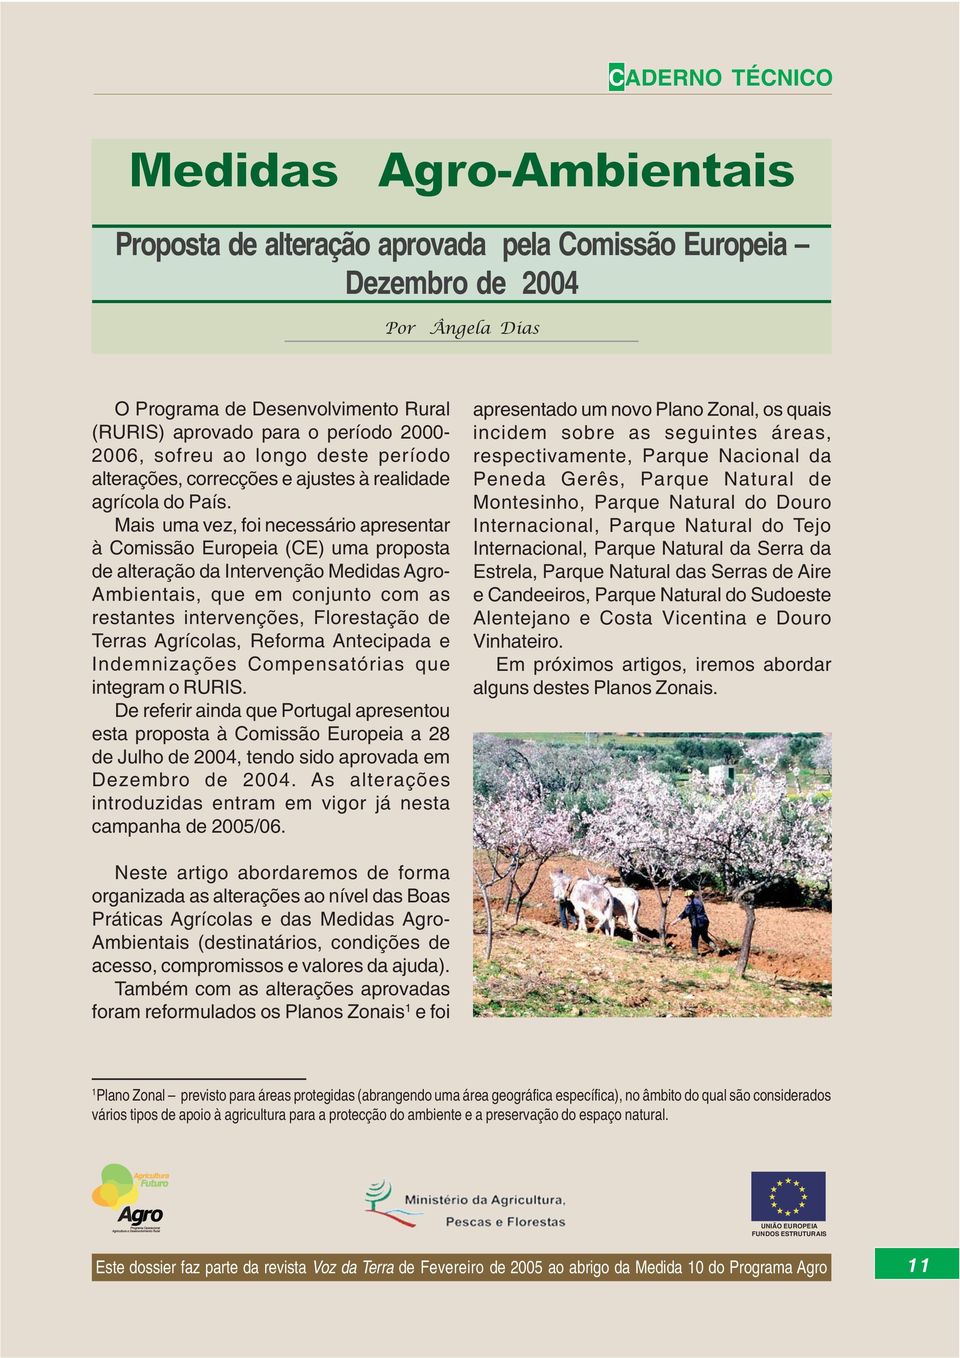 Mais uma vez, foi necessário apresentar à Comissão Europeia (CE) uma proposta de alteração da Intervenção Medidas Agro- Ambientais, que em conjunto com as restantes intervenções, Florestação de